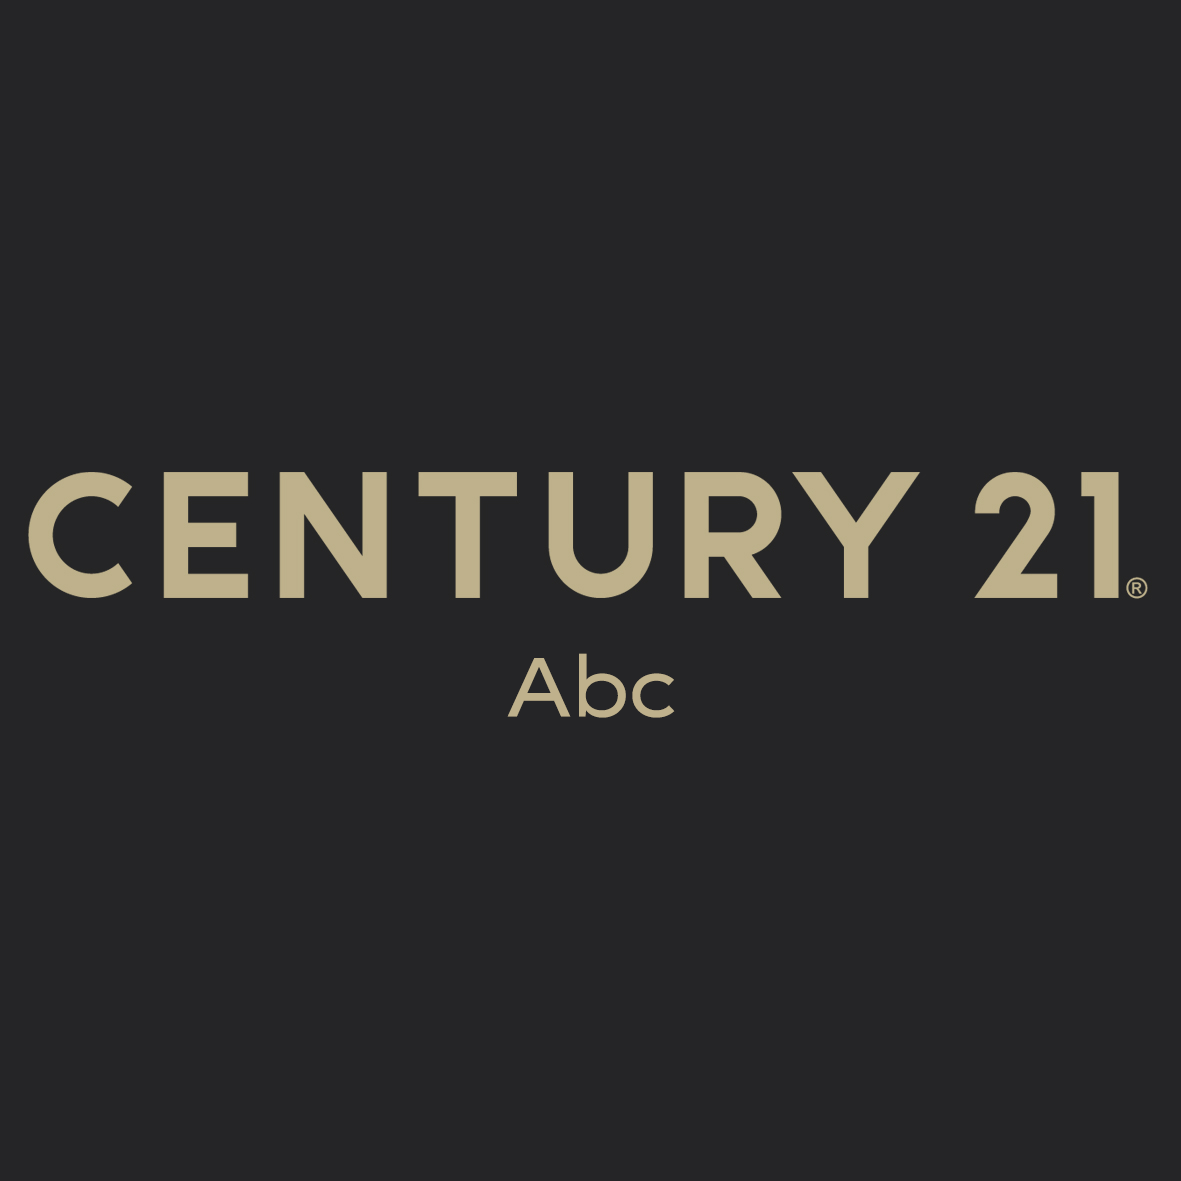 CENTURY 21 Abc